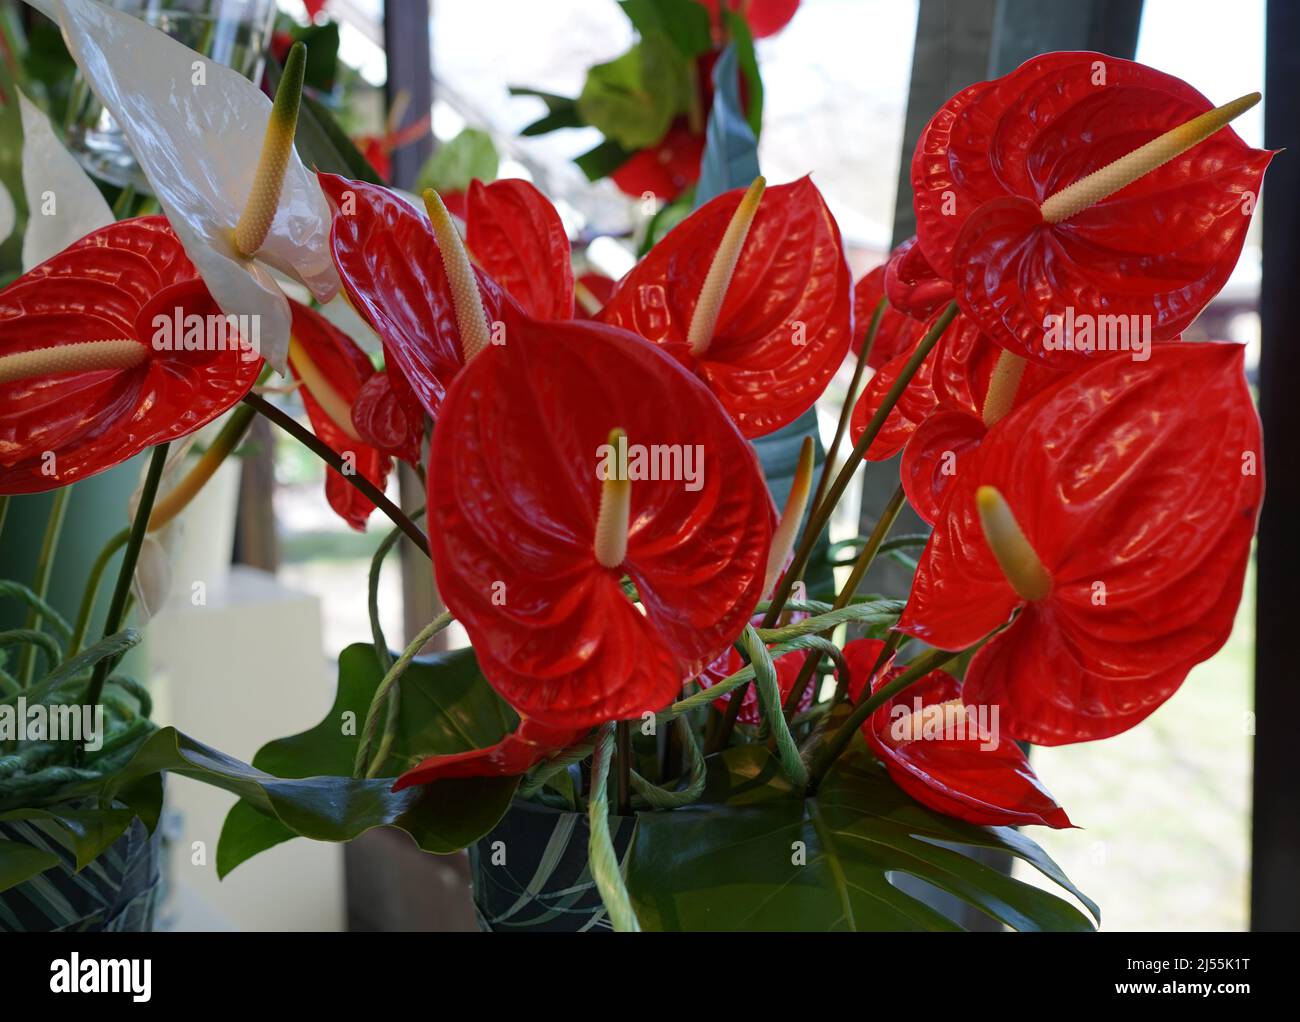 Anthurium rouge, fleur d'arrière-plan ou fleur de flamants roses. Les anthuriums sont le plus grand genre de la famille des arum, les Araceae. Banque D'Images